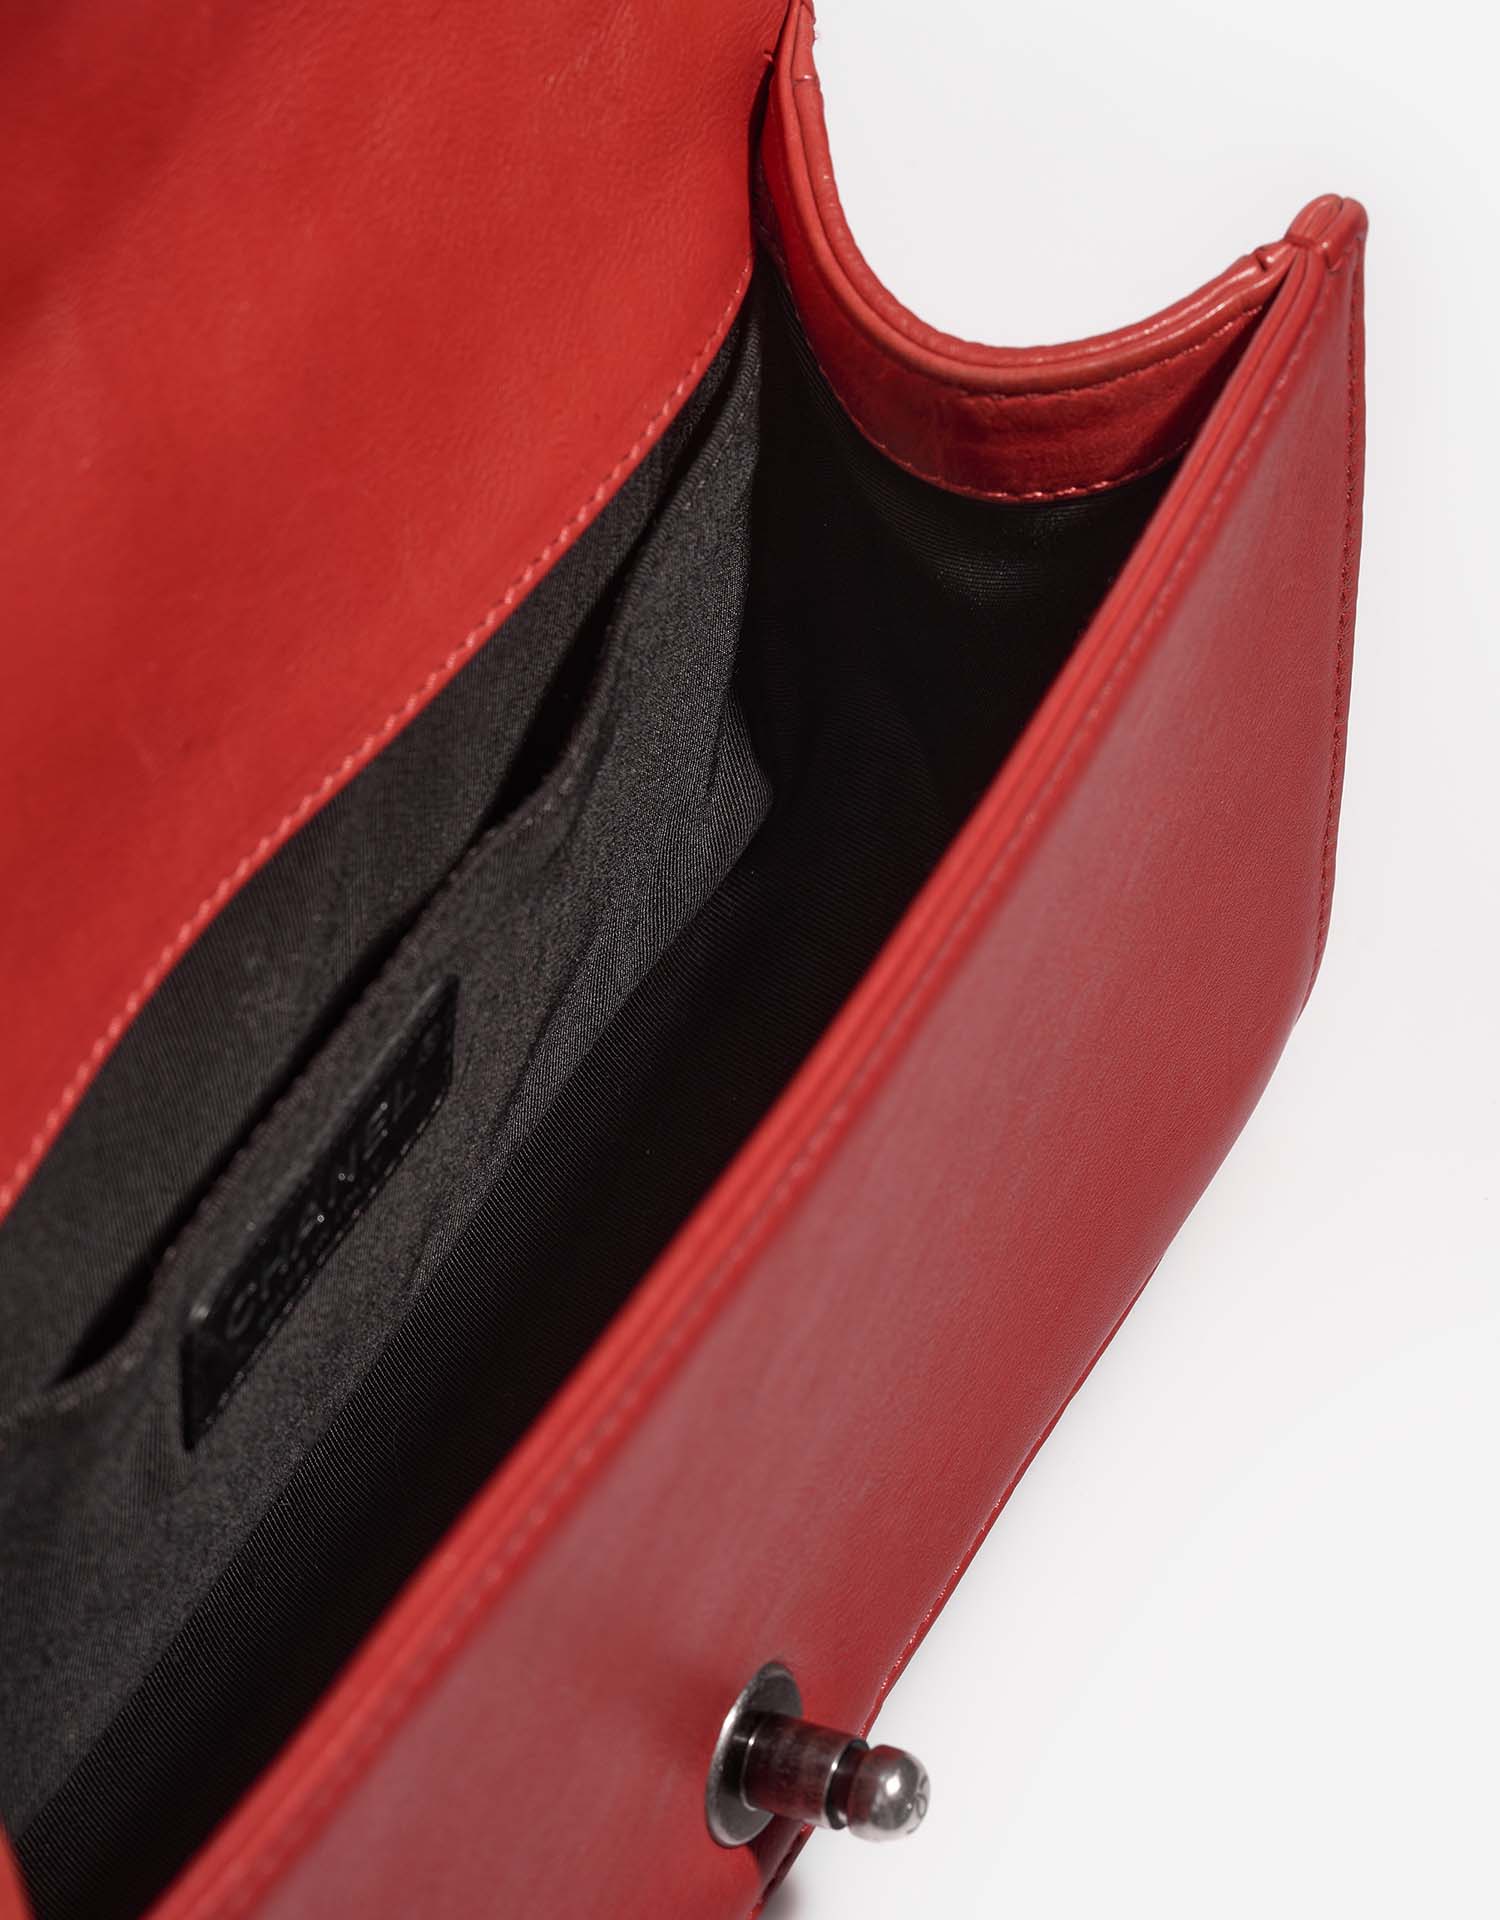 Chanel Boy OldMedium Red Inside | Verkaufen Sie Ihre Designer-Tasche auf Saclab.com